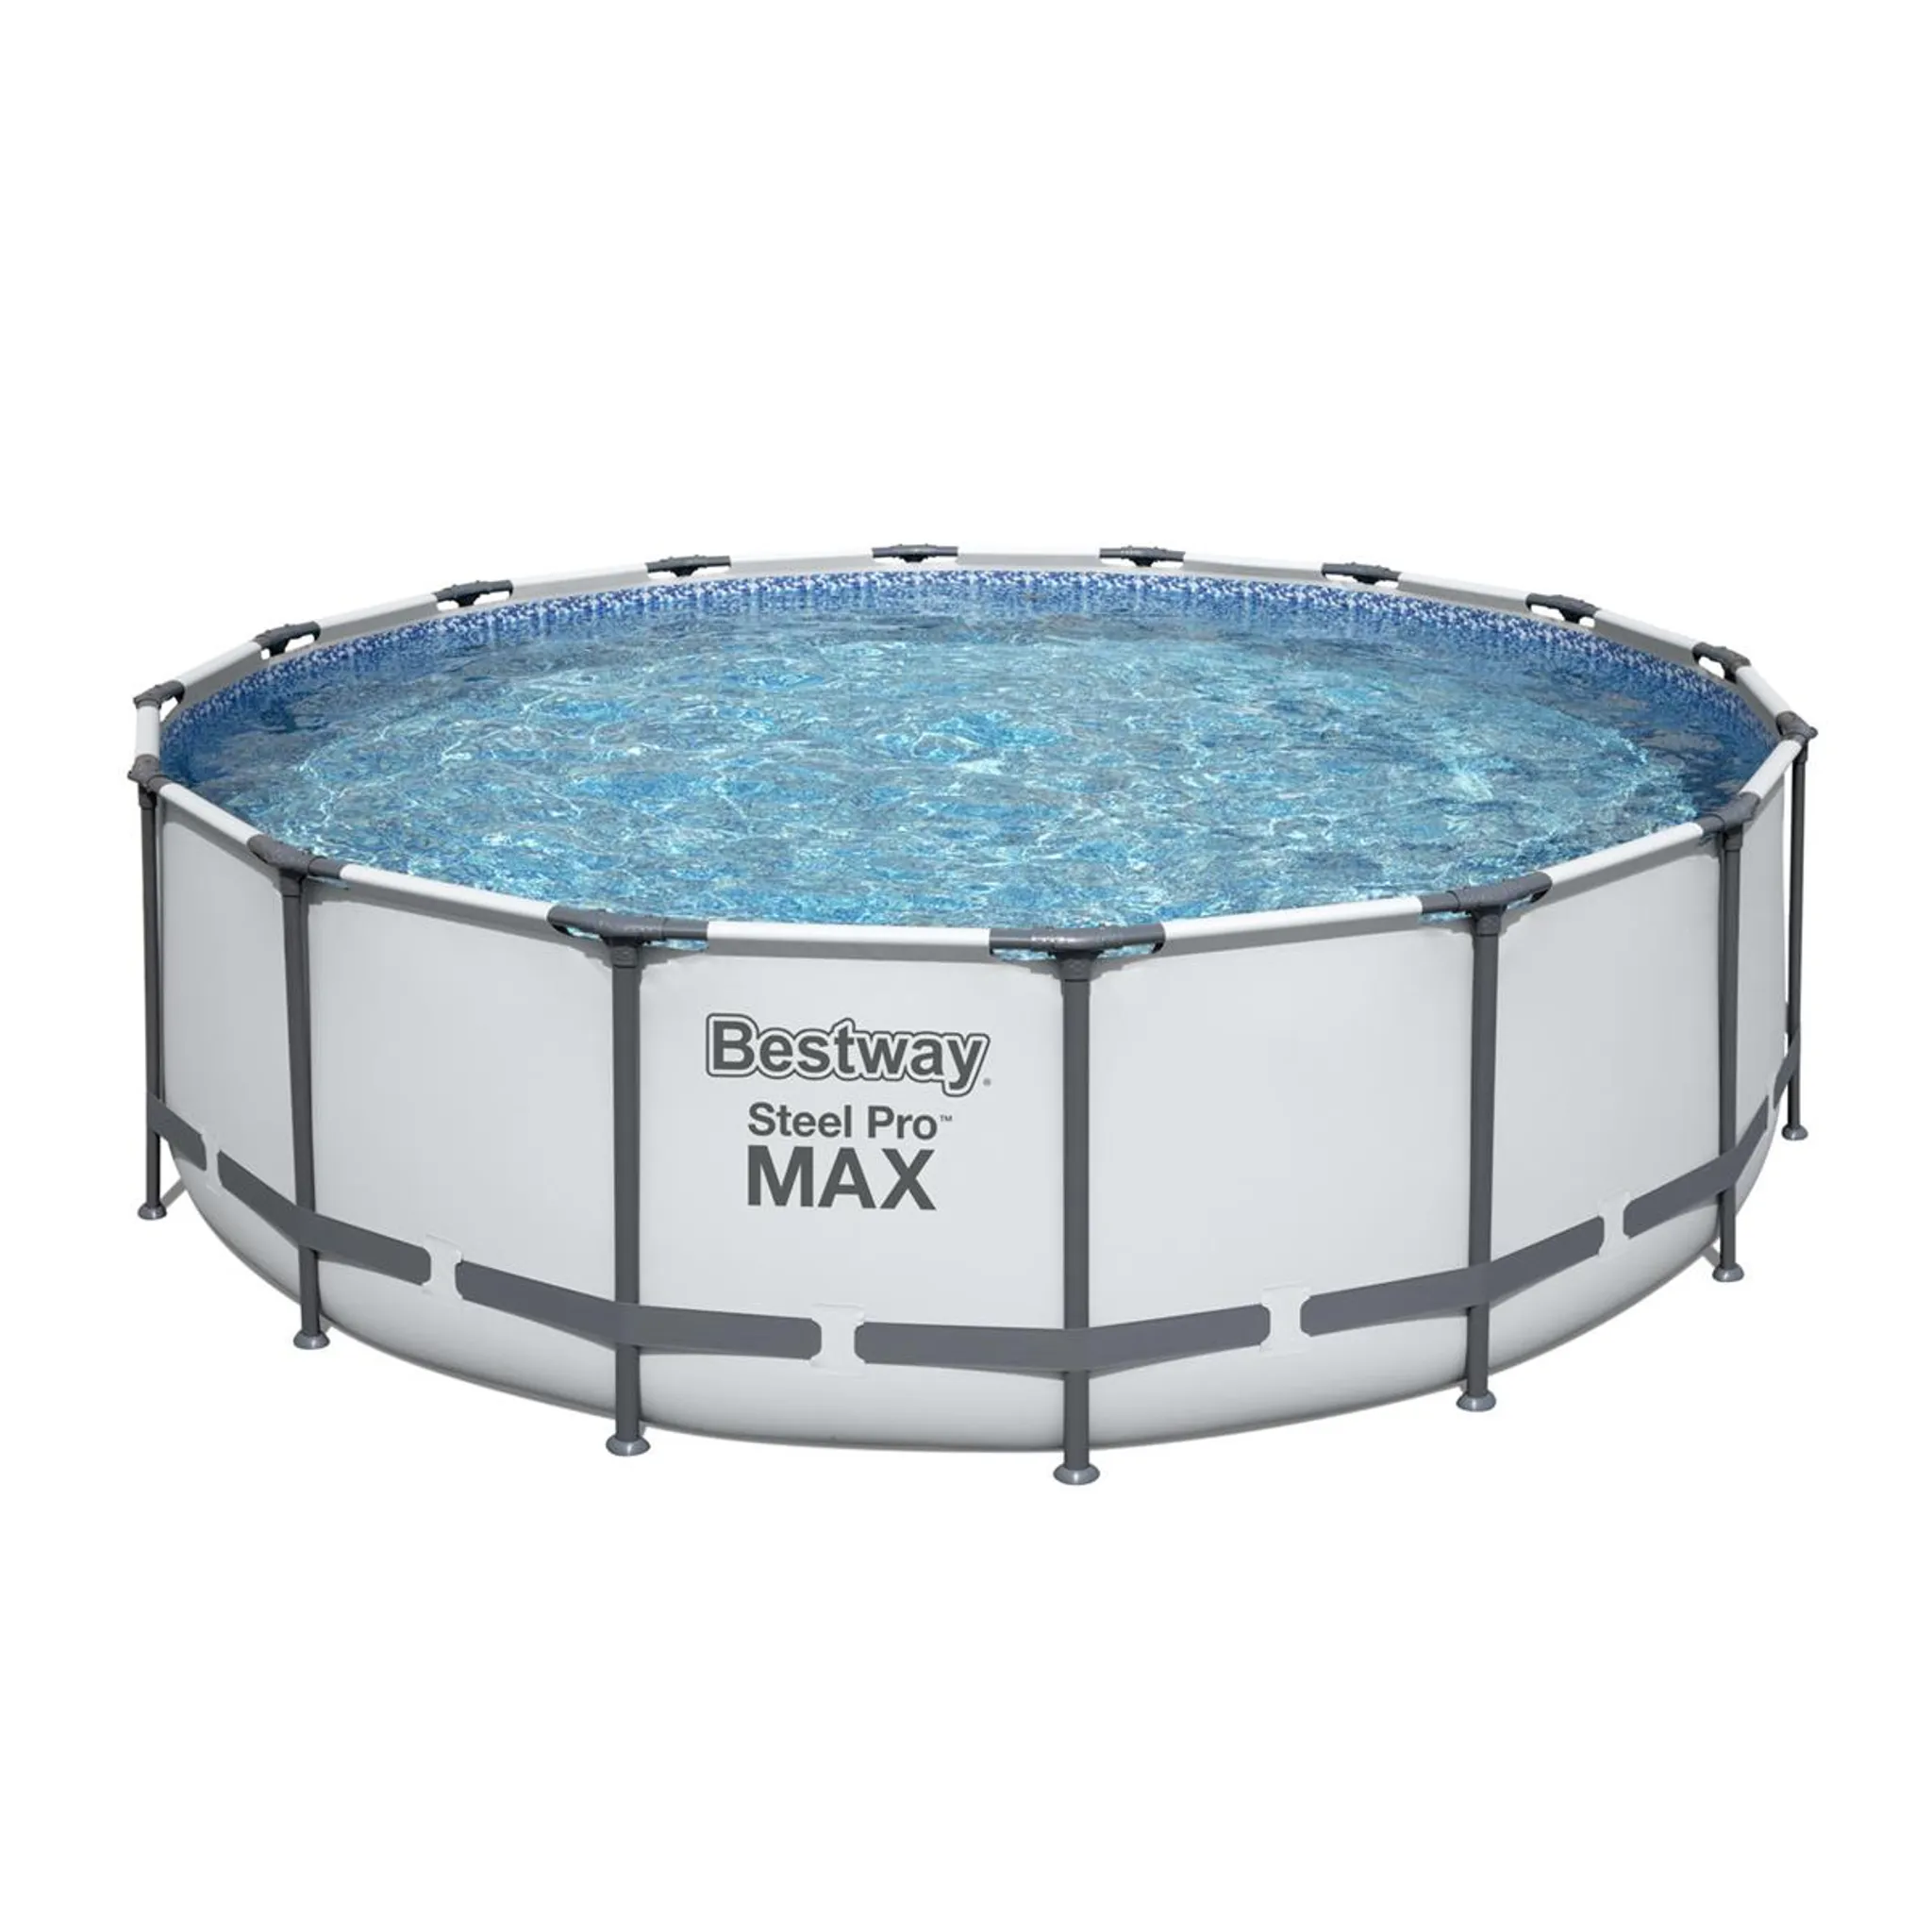 Bestway Steel Pro MAX Pool rund Ø 488 x 122